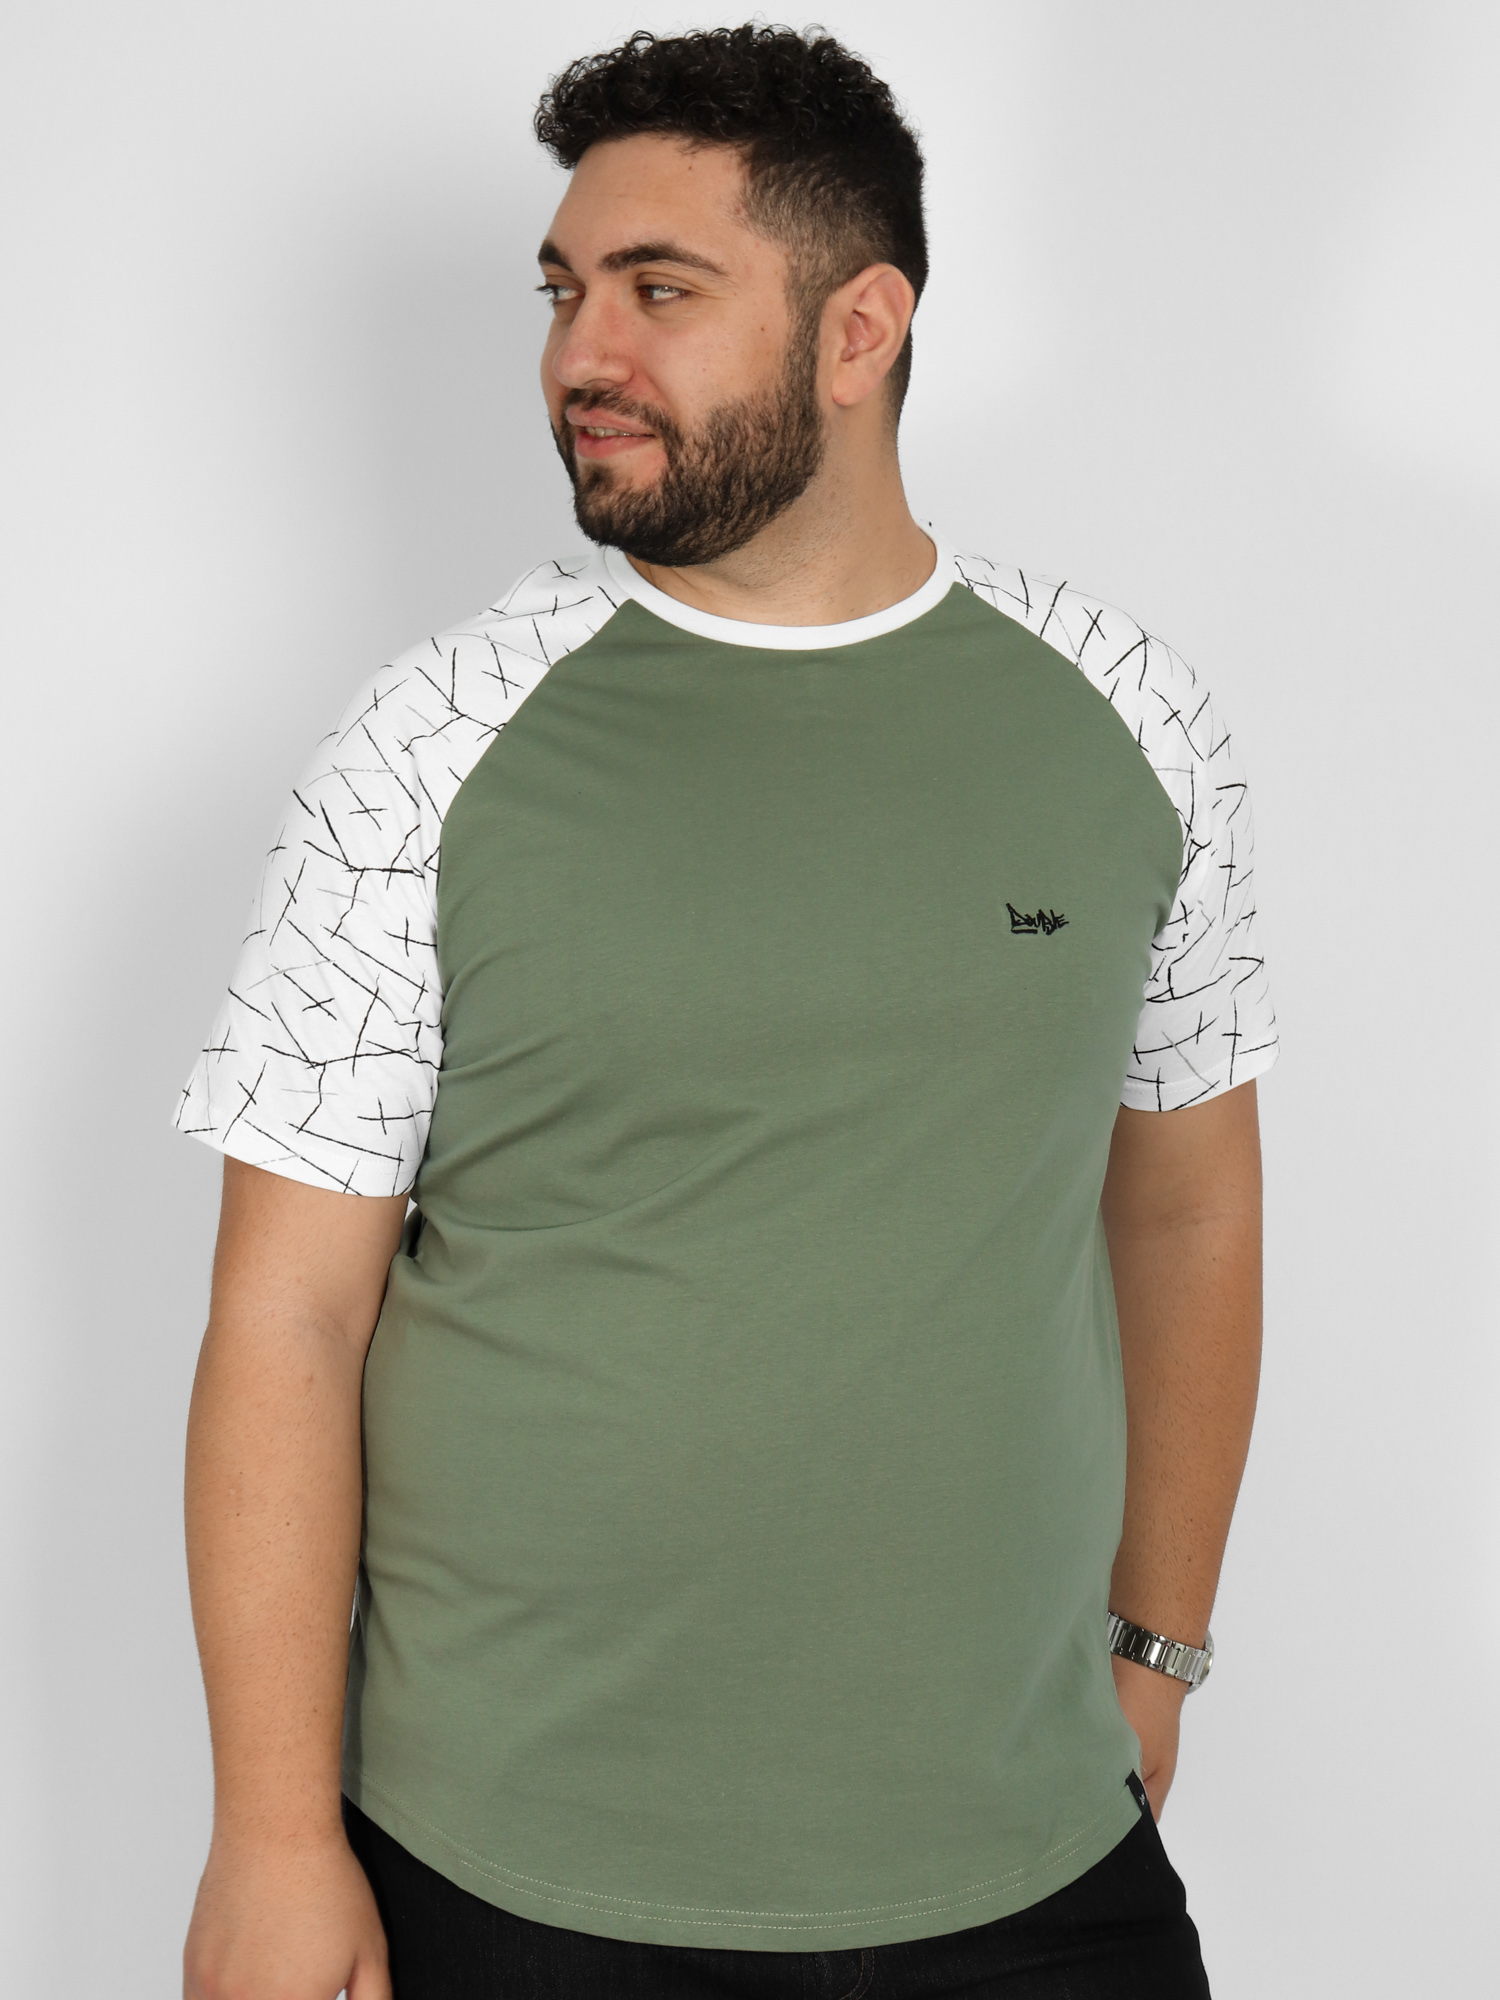 Ανδρική Μπλούζα Τ-shirt Δίχρωμη - Χακί